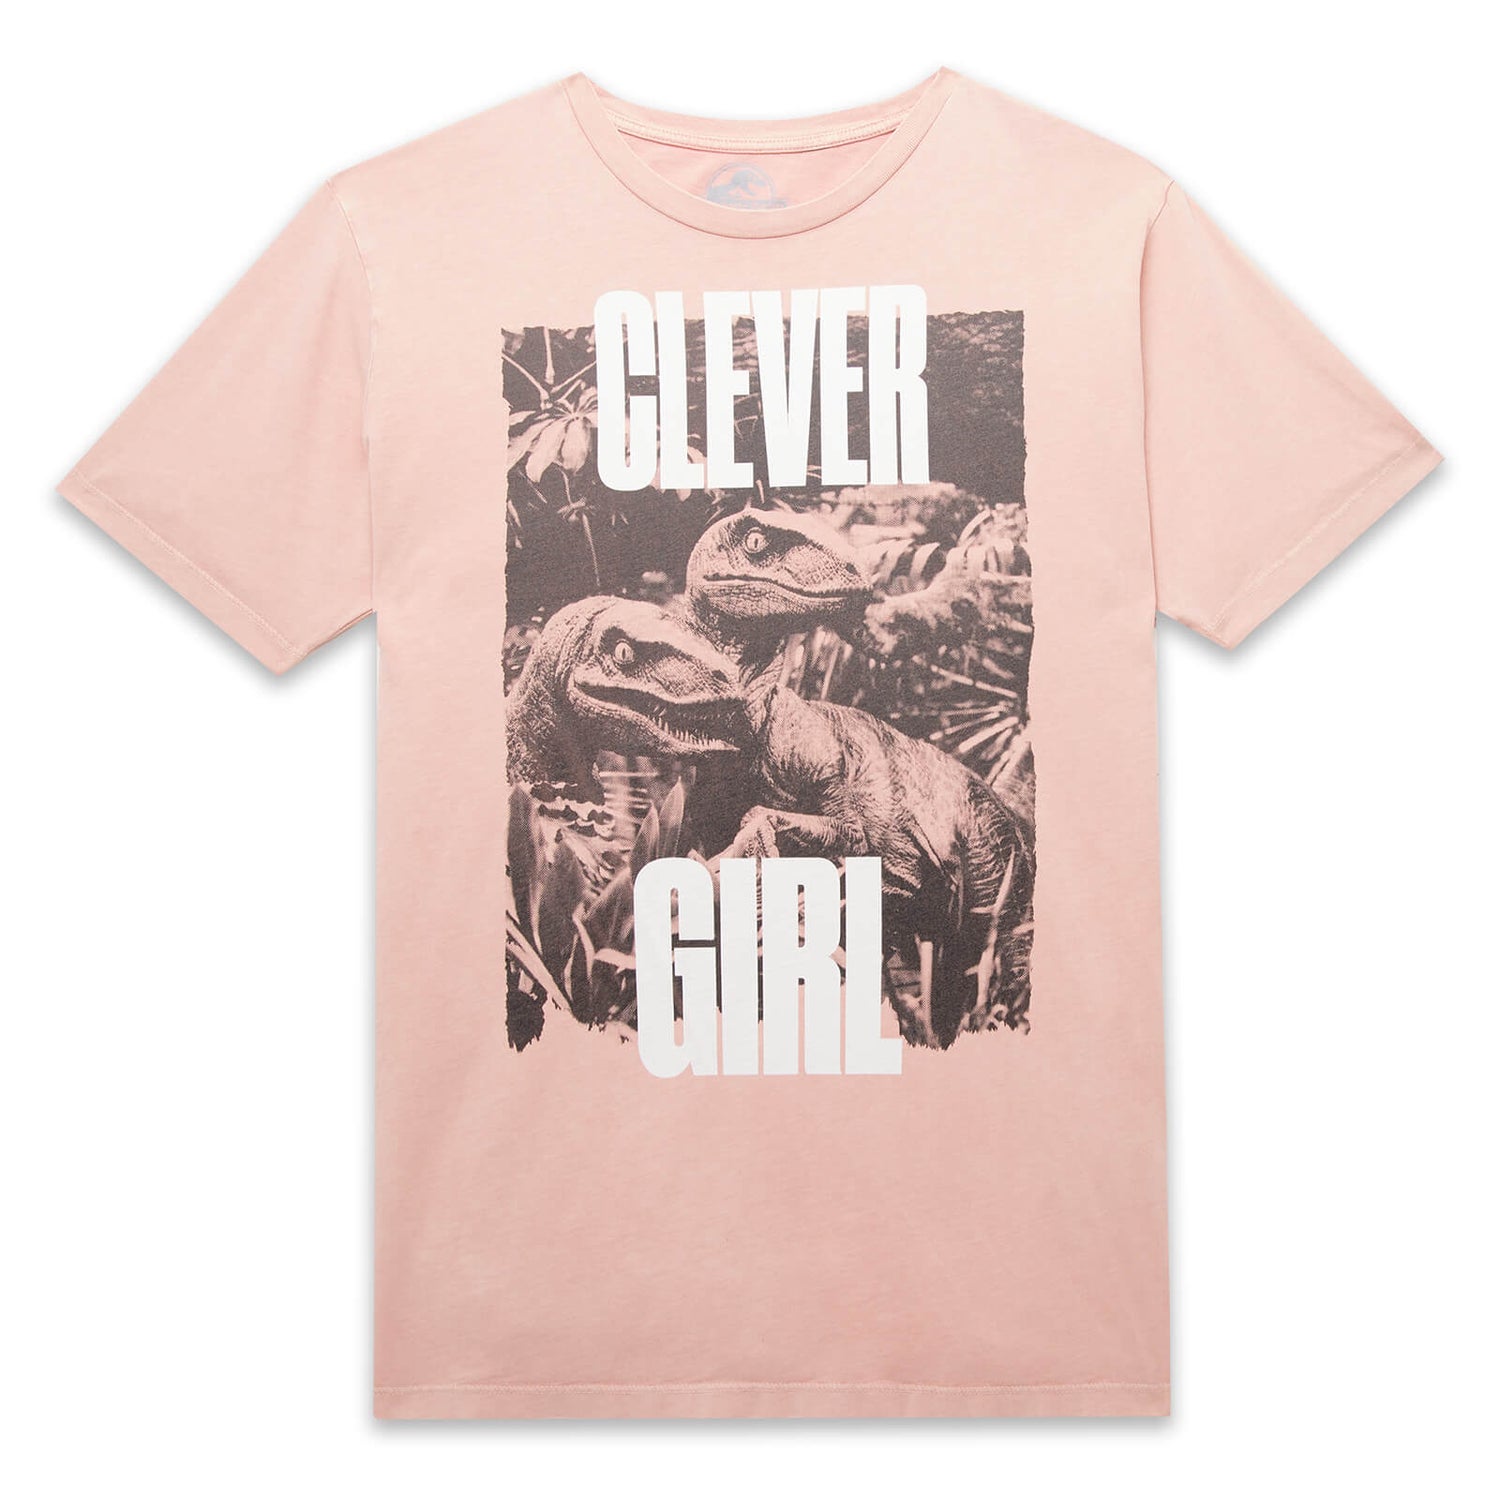 Camiseta unisex Clever Girl de Jurassic Park - Pink Acid Wash